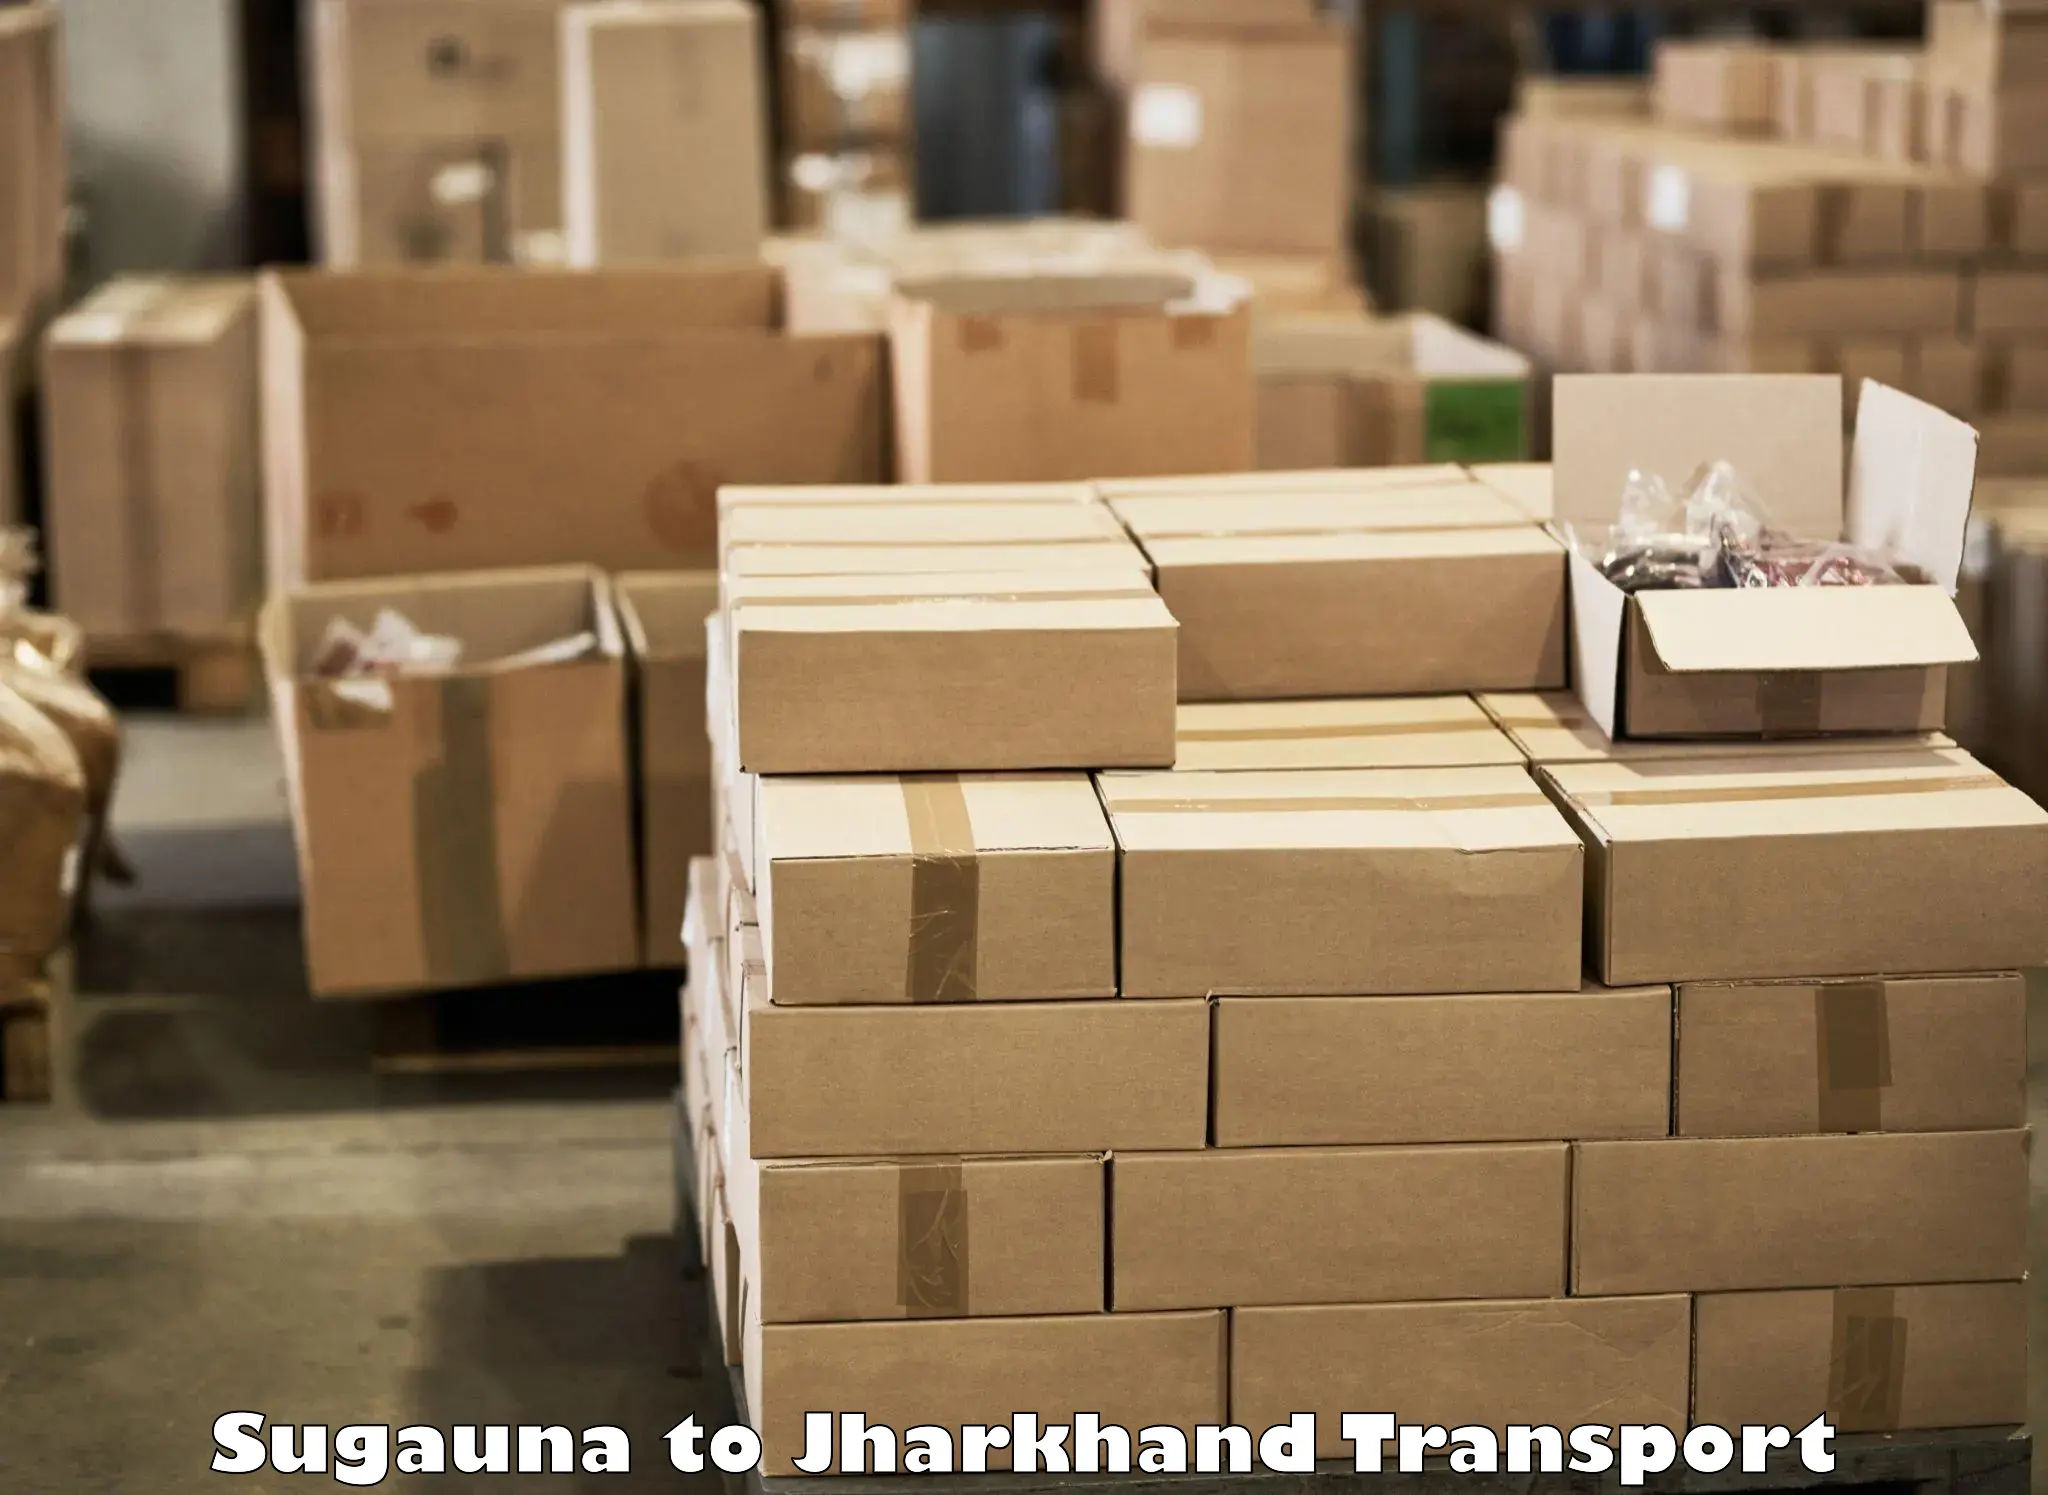 Truck transport companies in India Sugauna to Boarijore